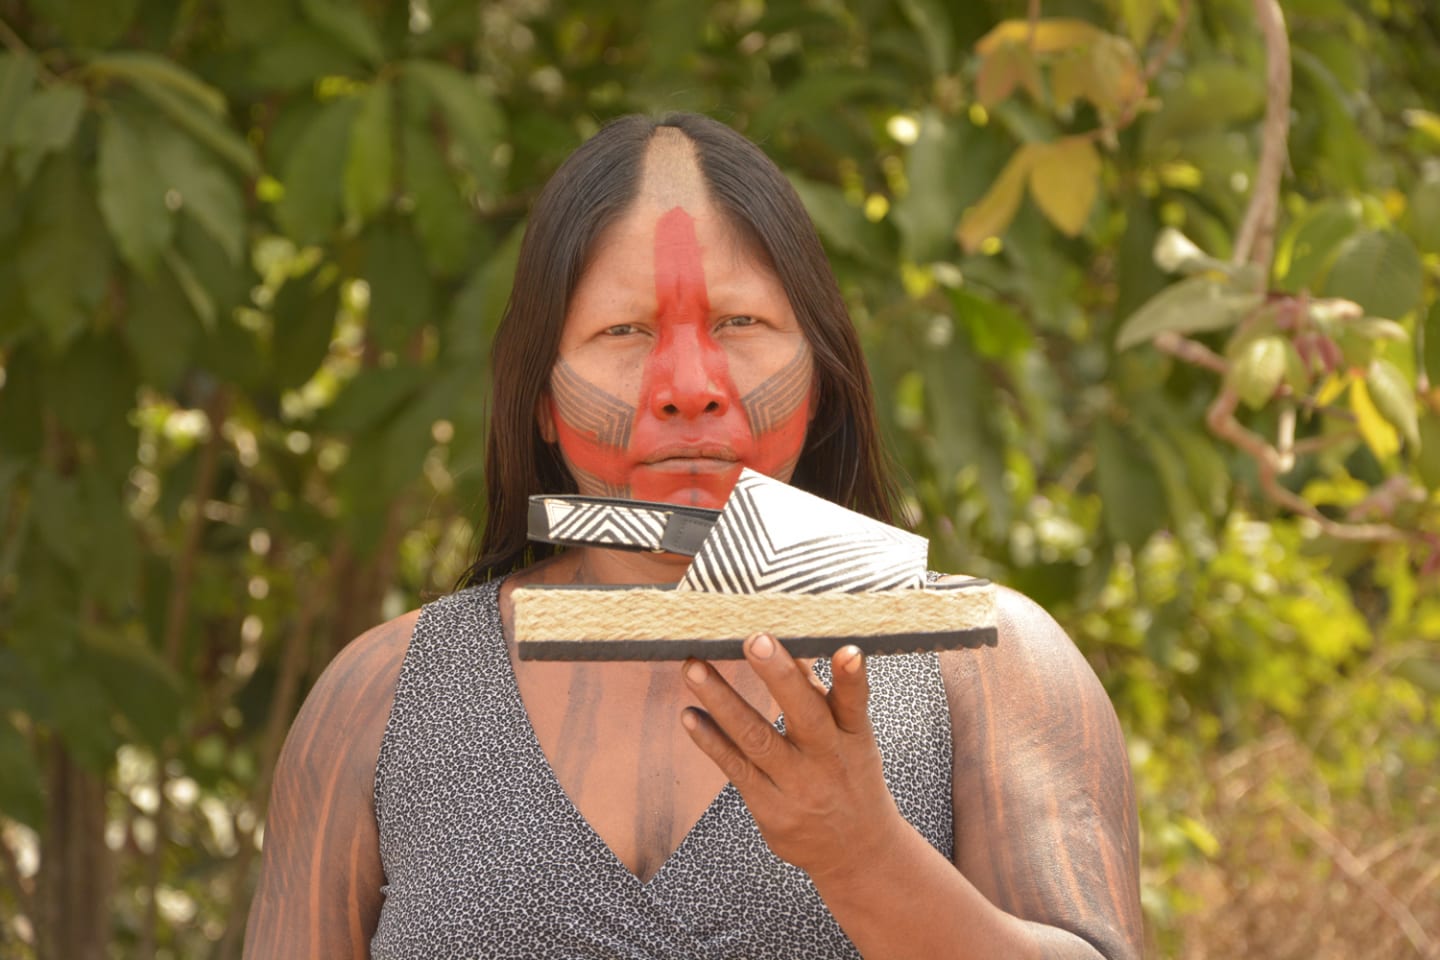 ブラジル先住民と履物メーカー「パーキー・シューズ」による 新しいコラボレーションのかたち Webマガジン「axis」 デザインのwebメディア 